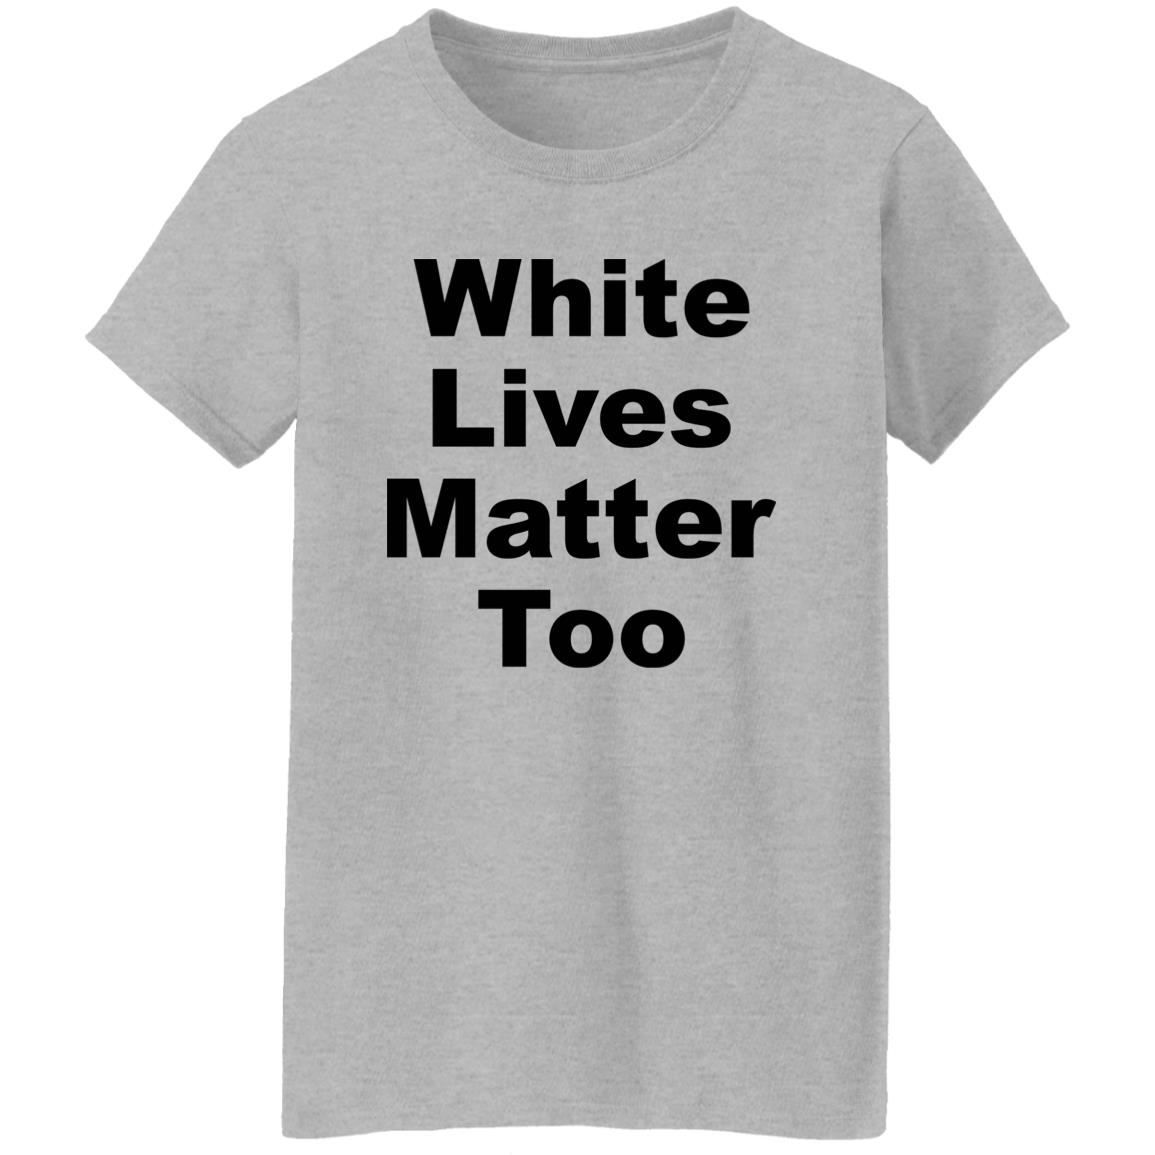 White Live Matter Too Shirt Niko Nance PatriotSue1776